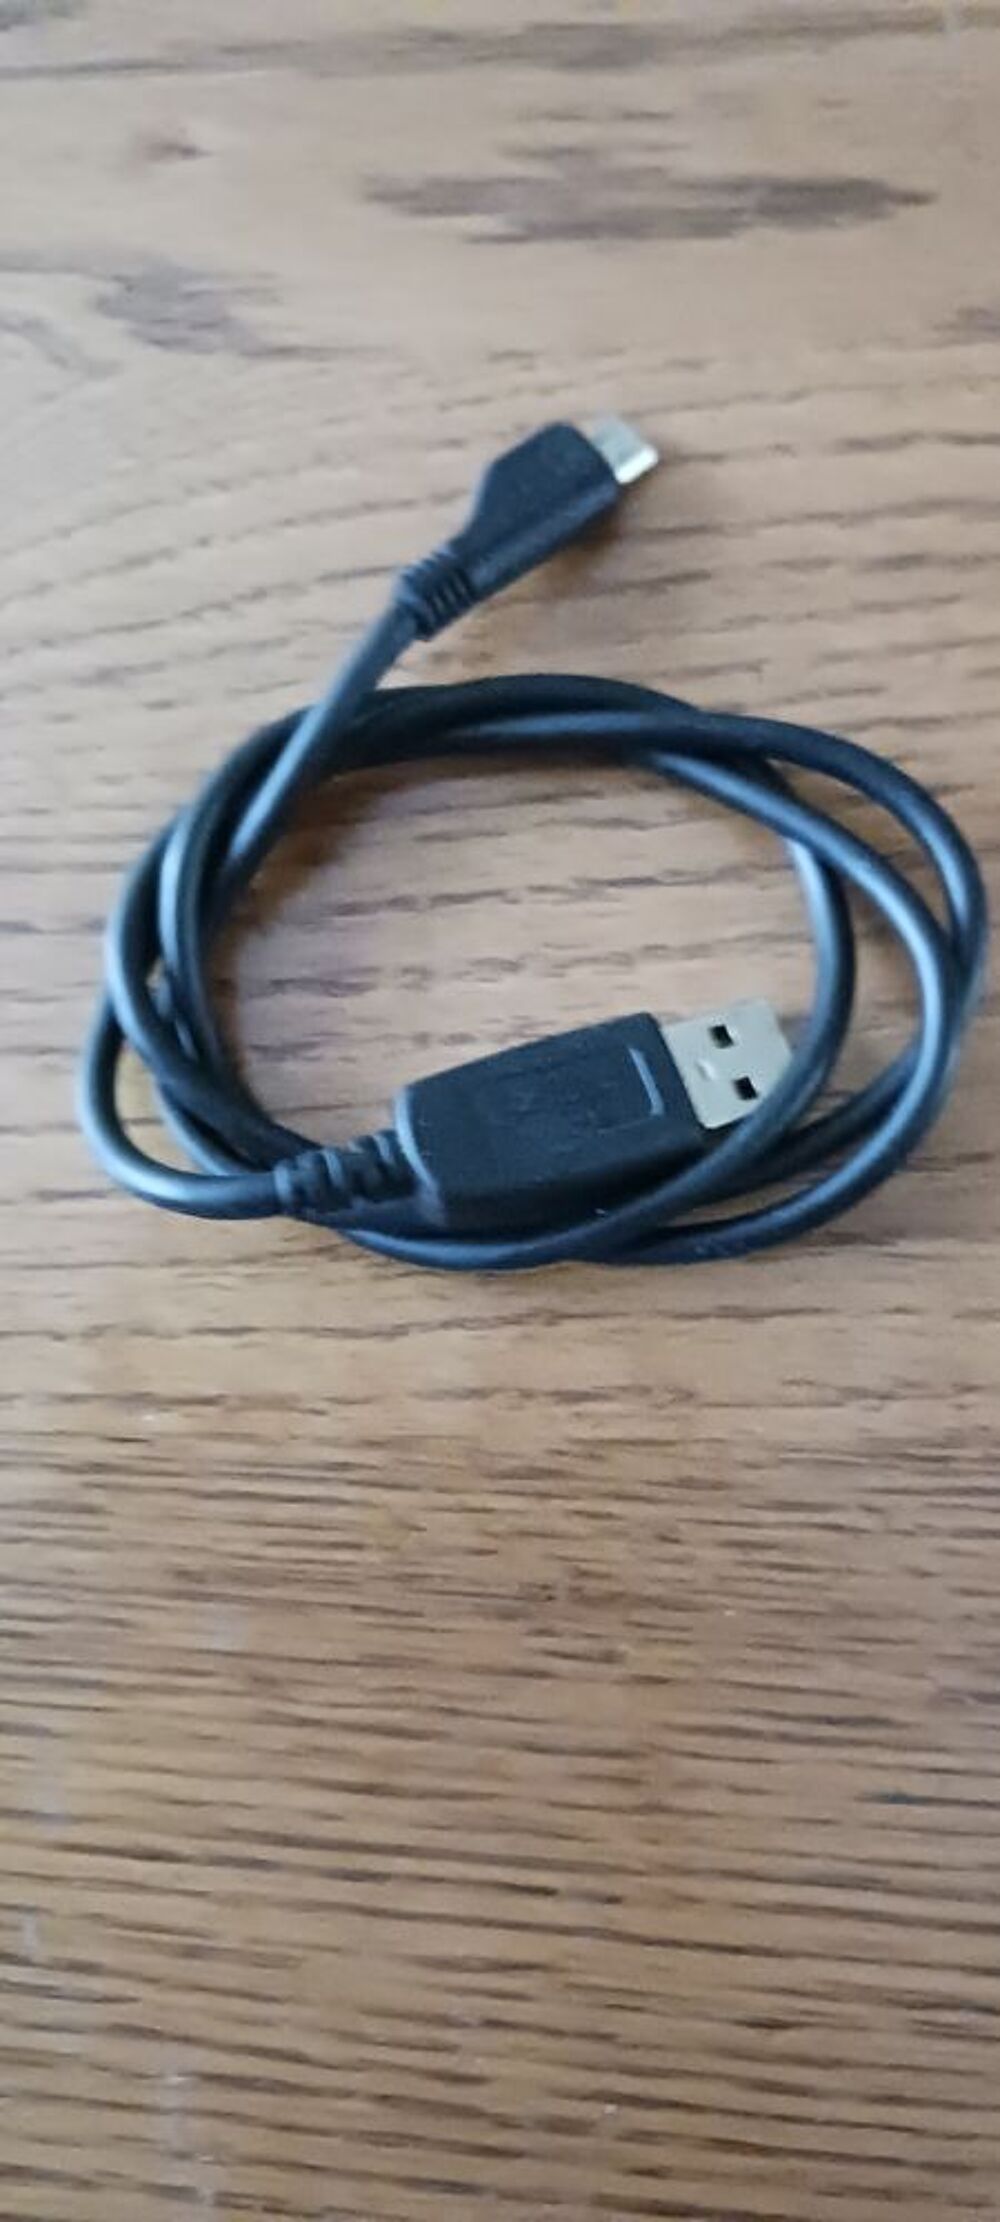 CABLE USB POUR TELEPHONE . Matriel informatique